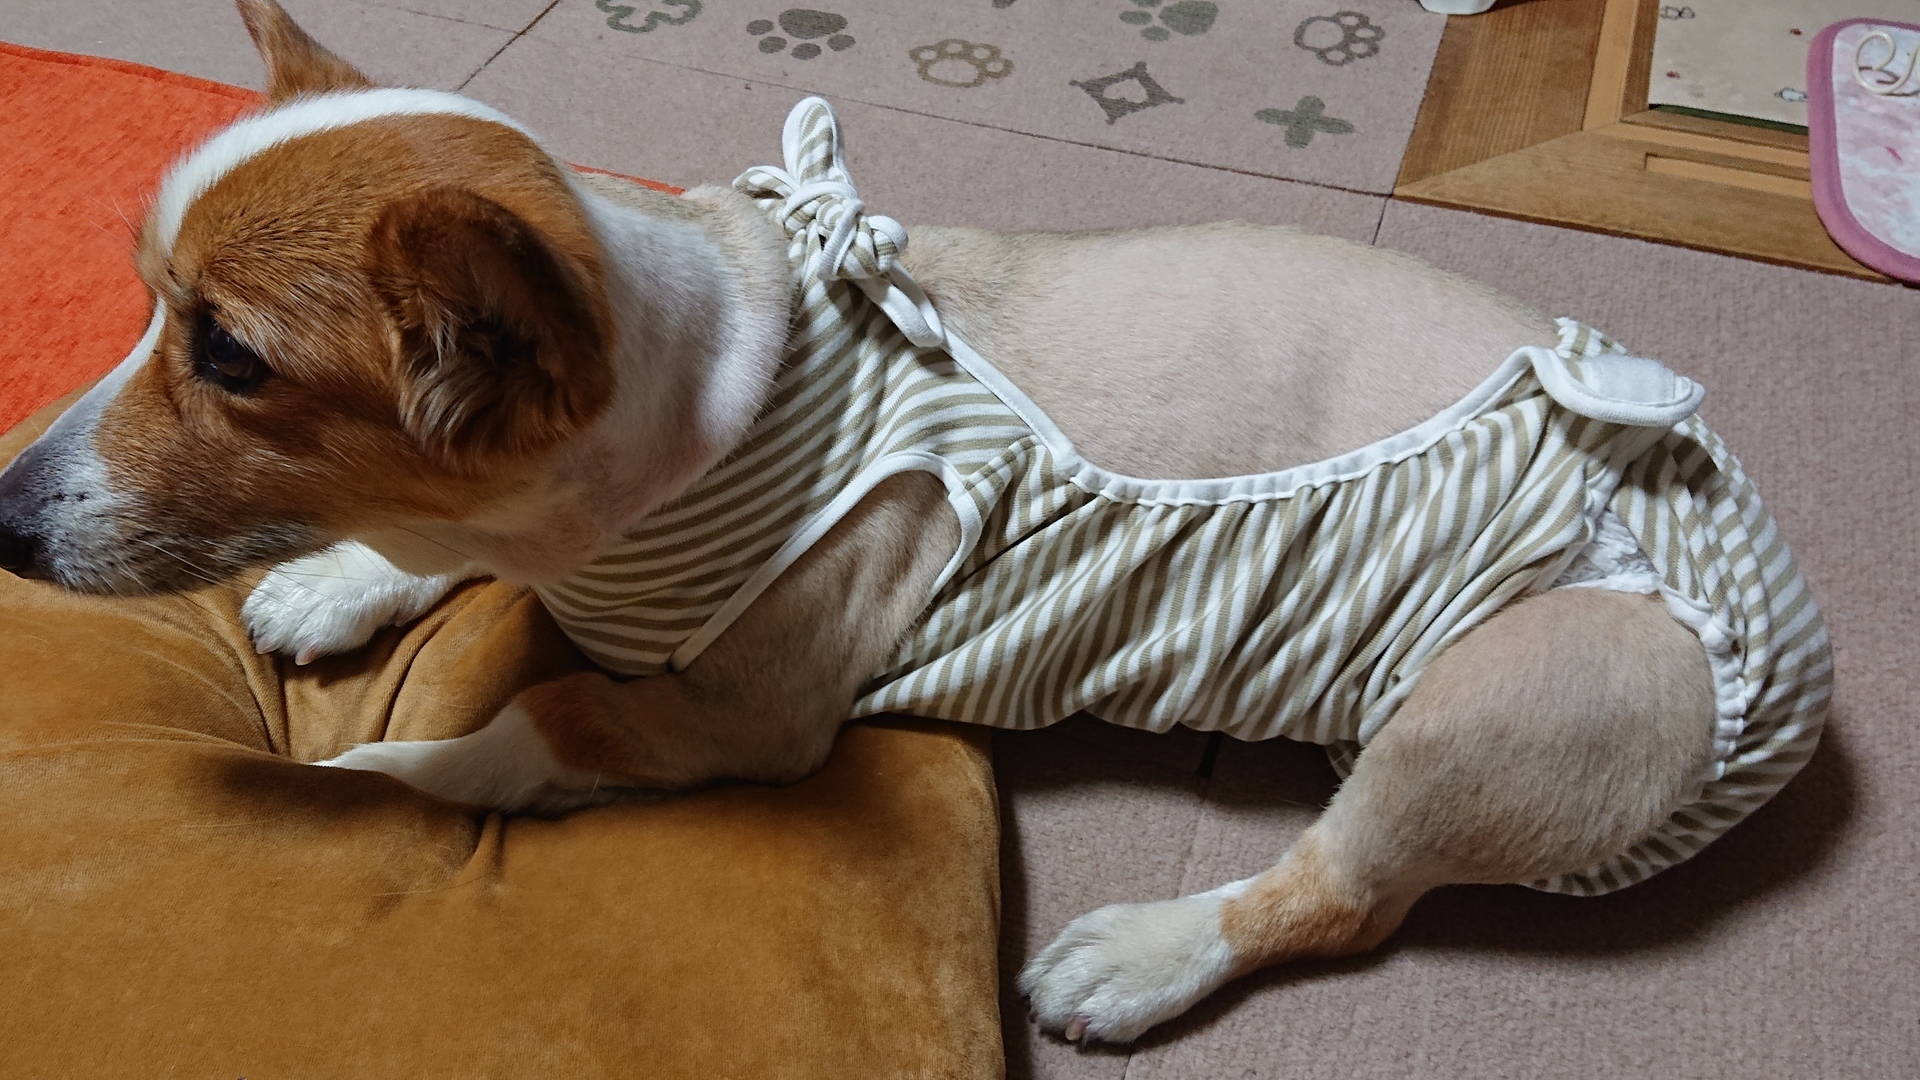 13キロ コーギちゃんの着せるオムツカバー 犬と暮らす普通の毎日